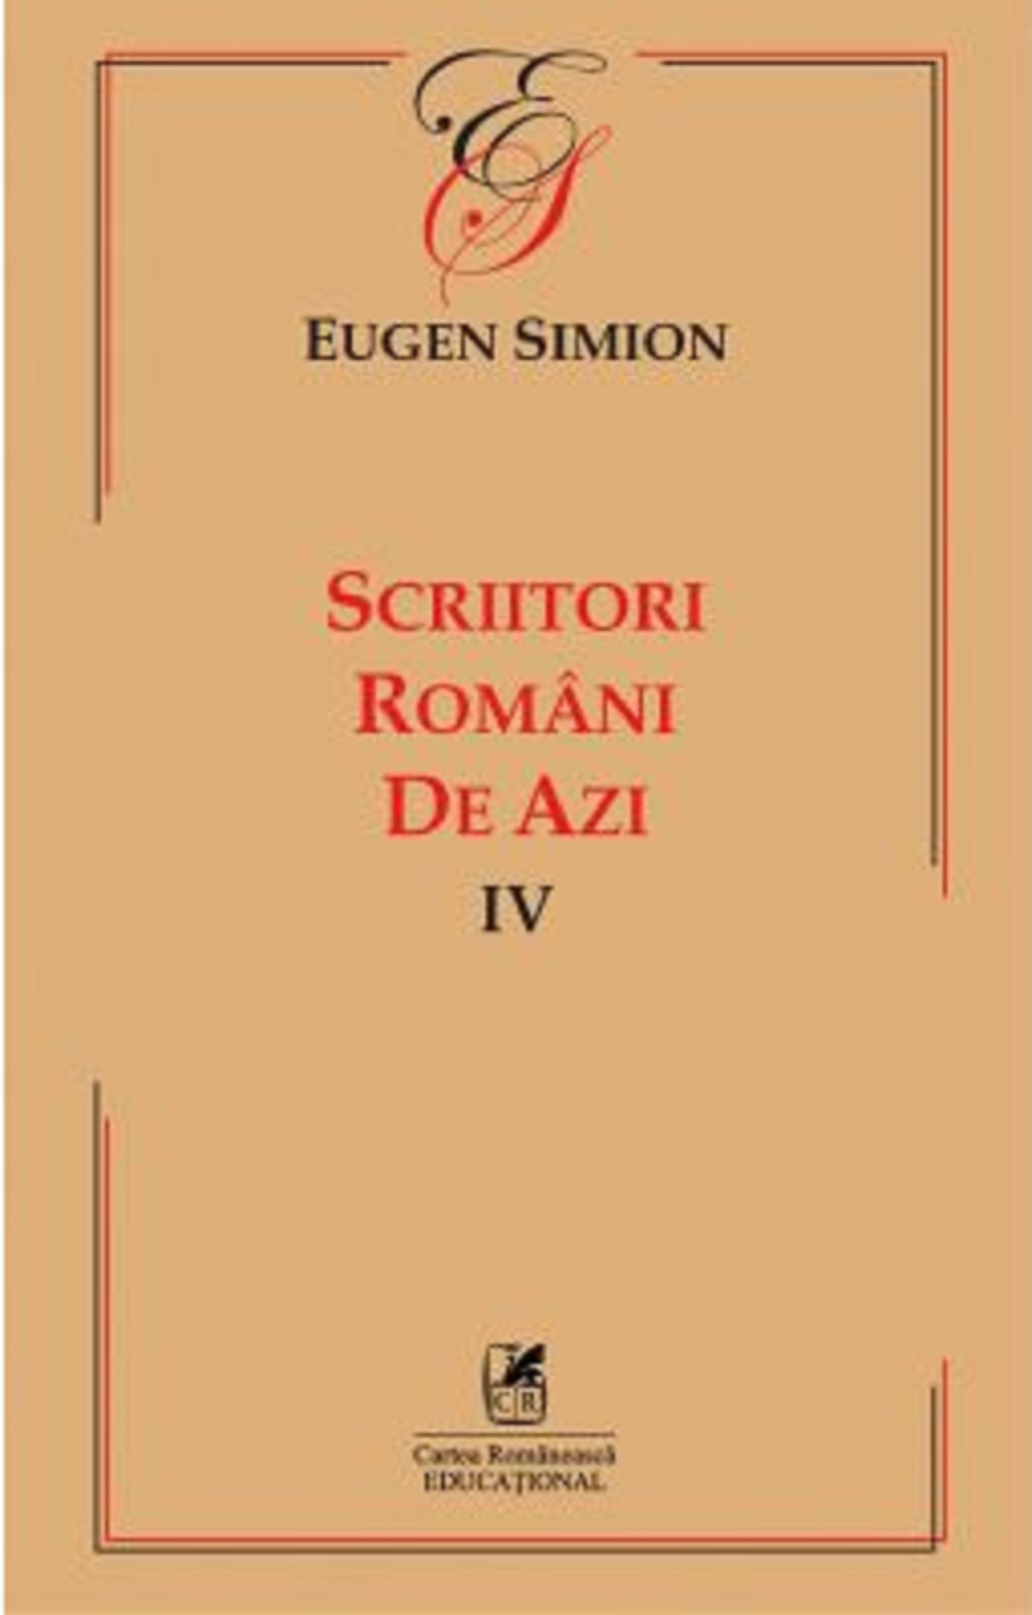 Scriitorii romani de azi IV | Eugen Simion Cartea Romaneasca Carte